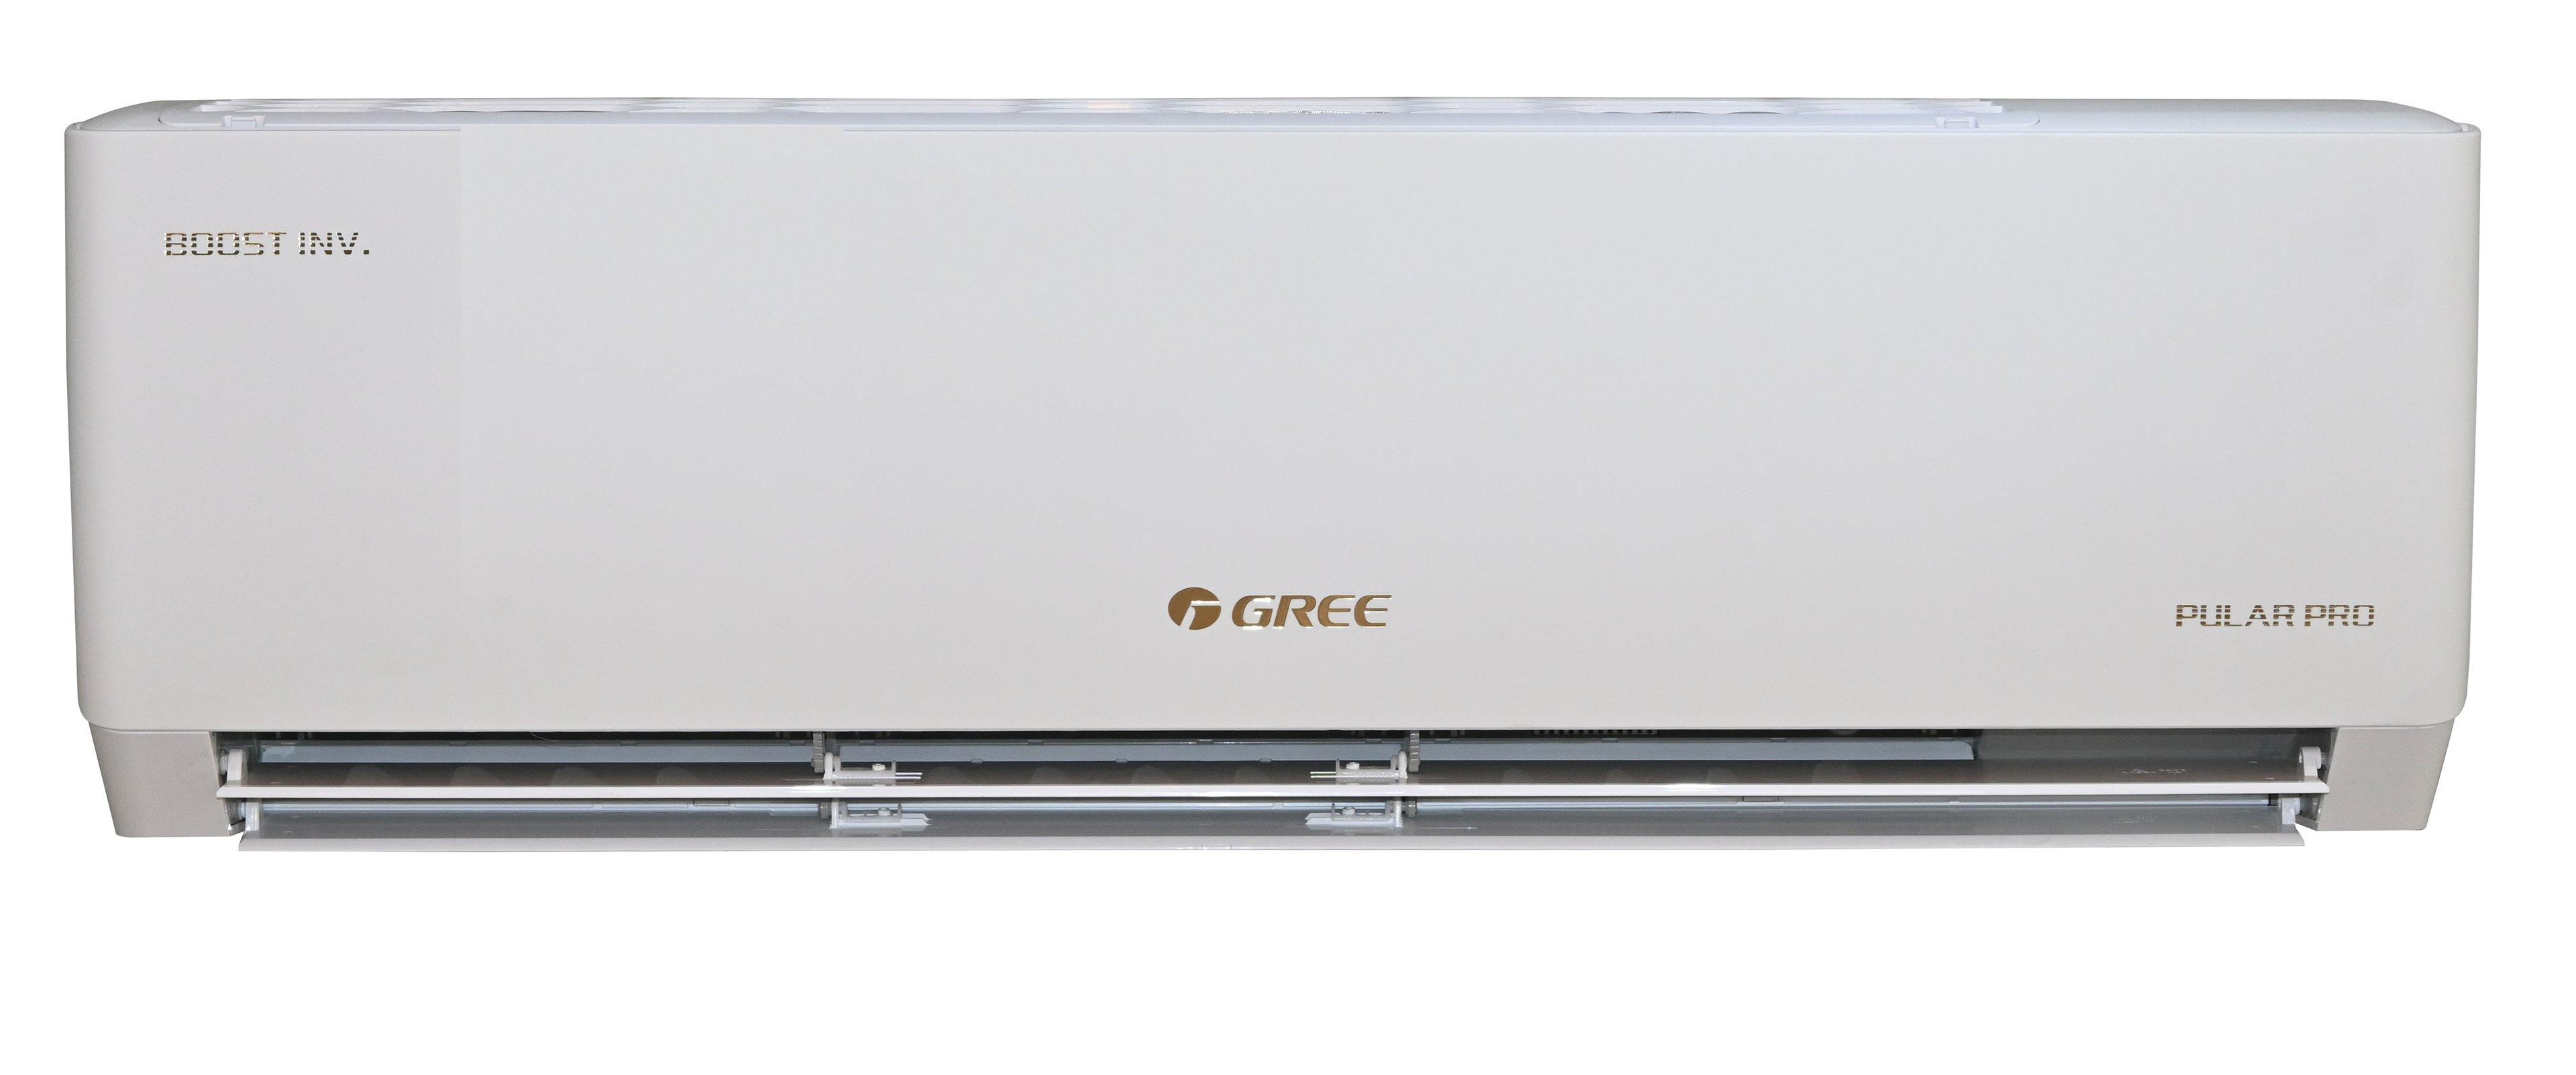 Buy Gree Pular Pro Inverter Split AC,Wi-Fi, 18,000 BTU, Cold in Saudi Arabia